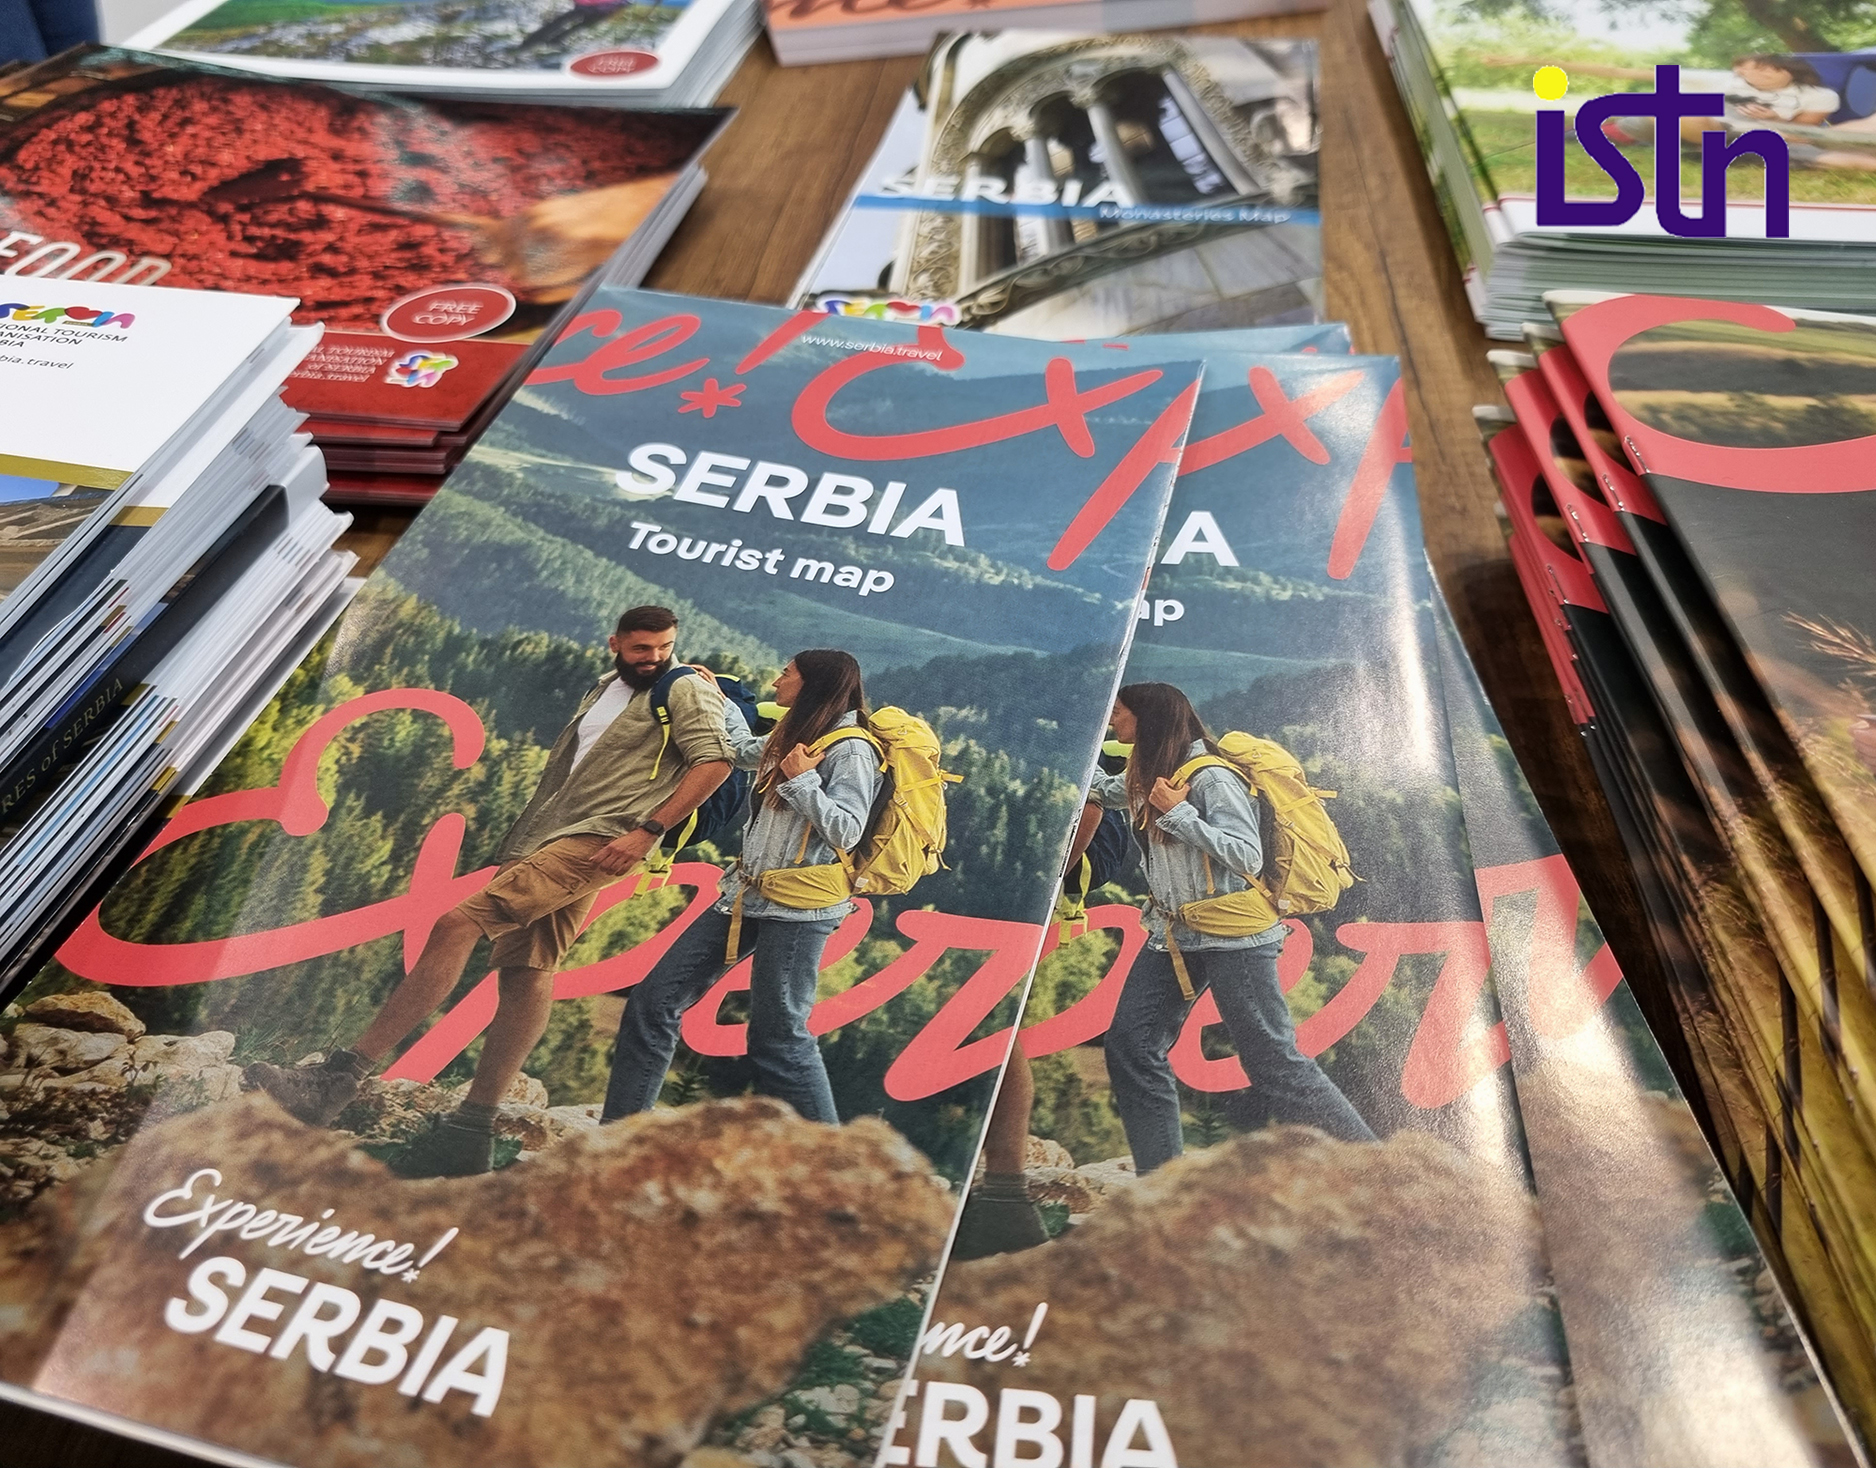 Turisticka ponuda Srbije, brosure, ISTN